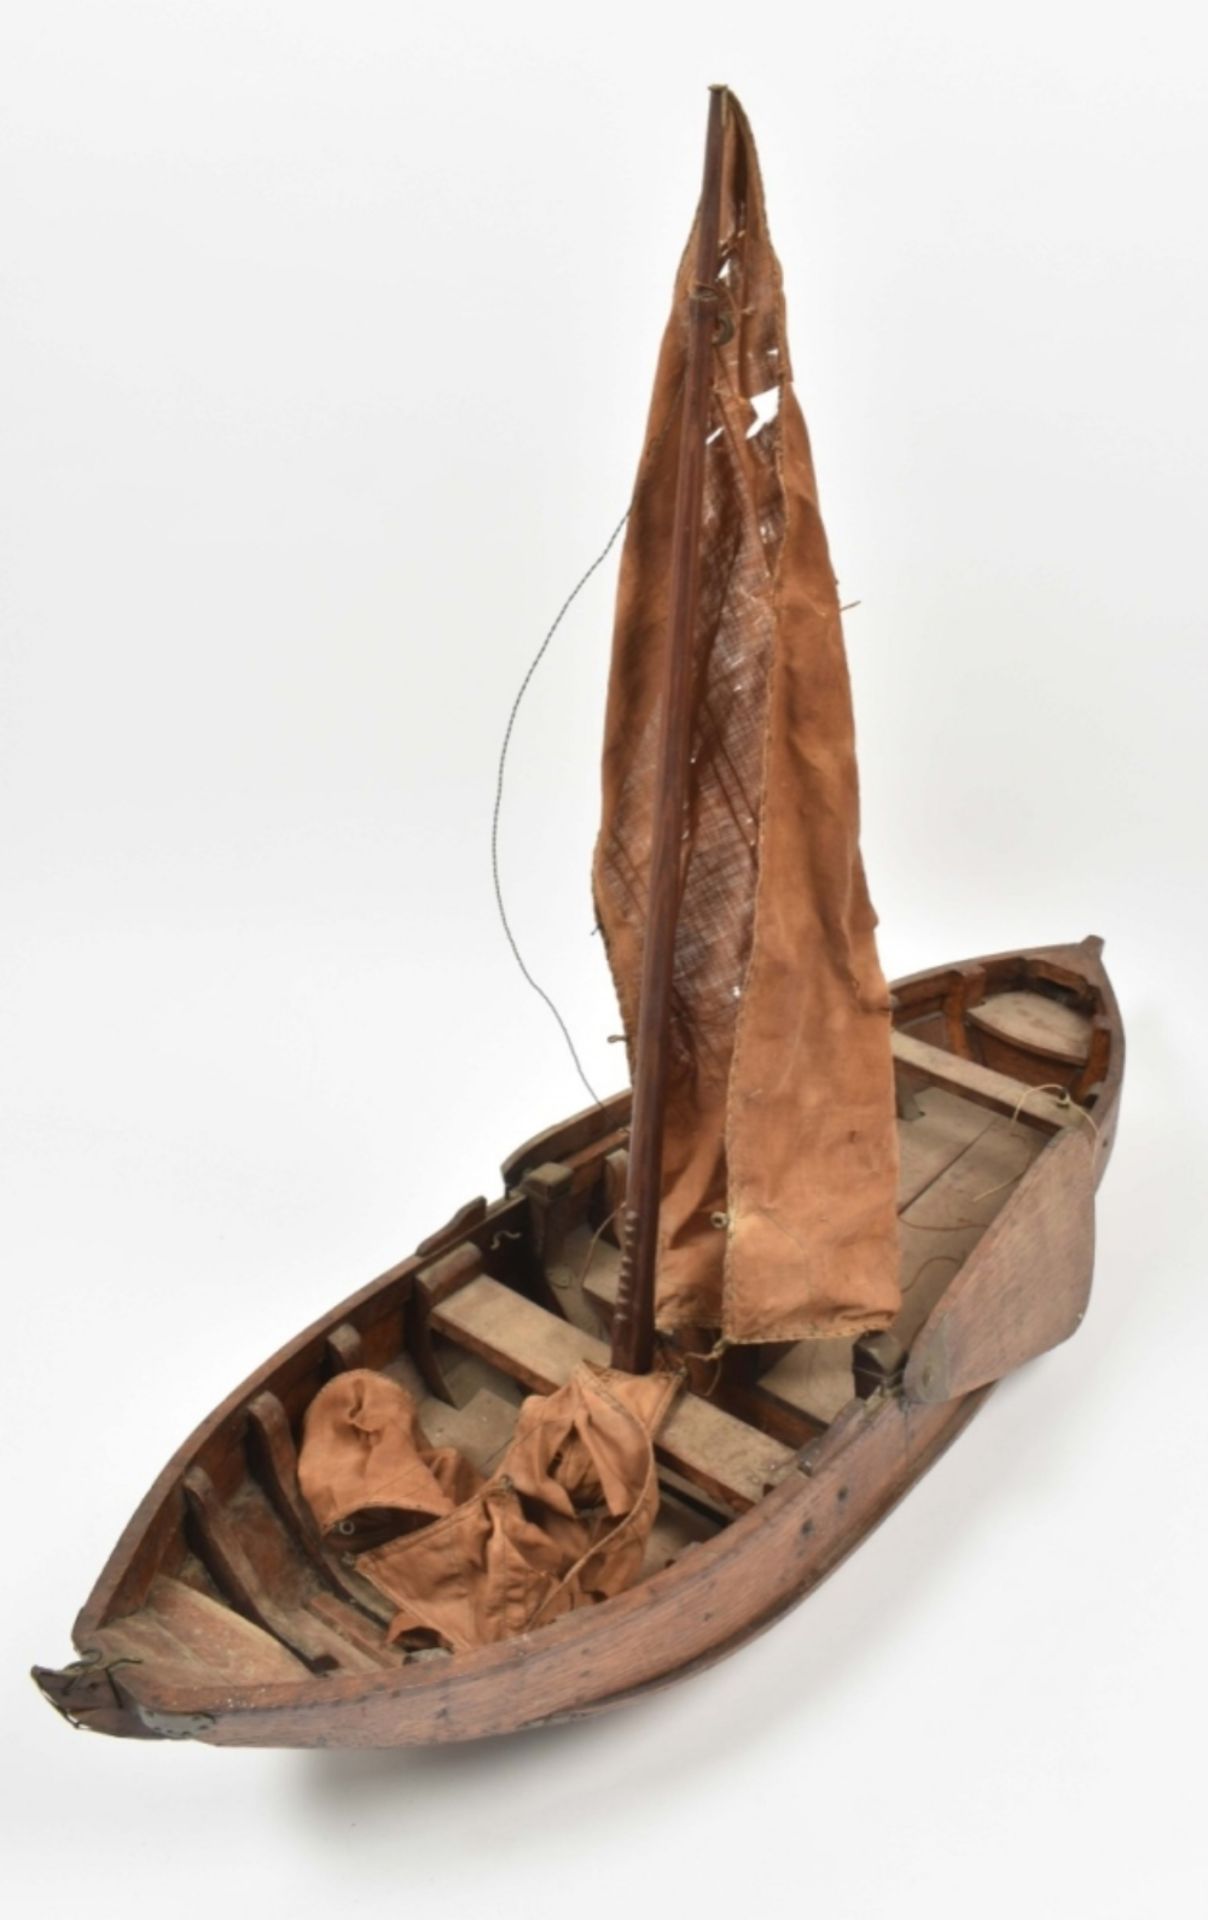 Historic model of a Dutch sailing vessel